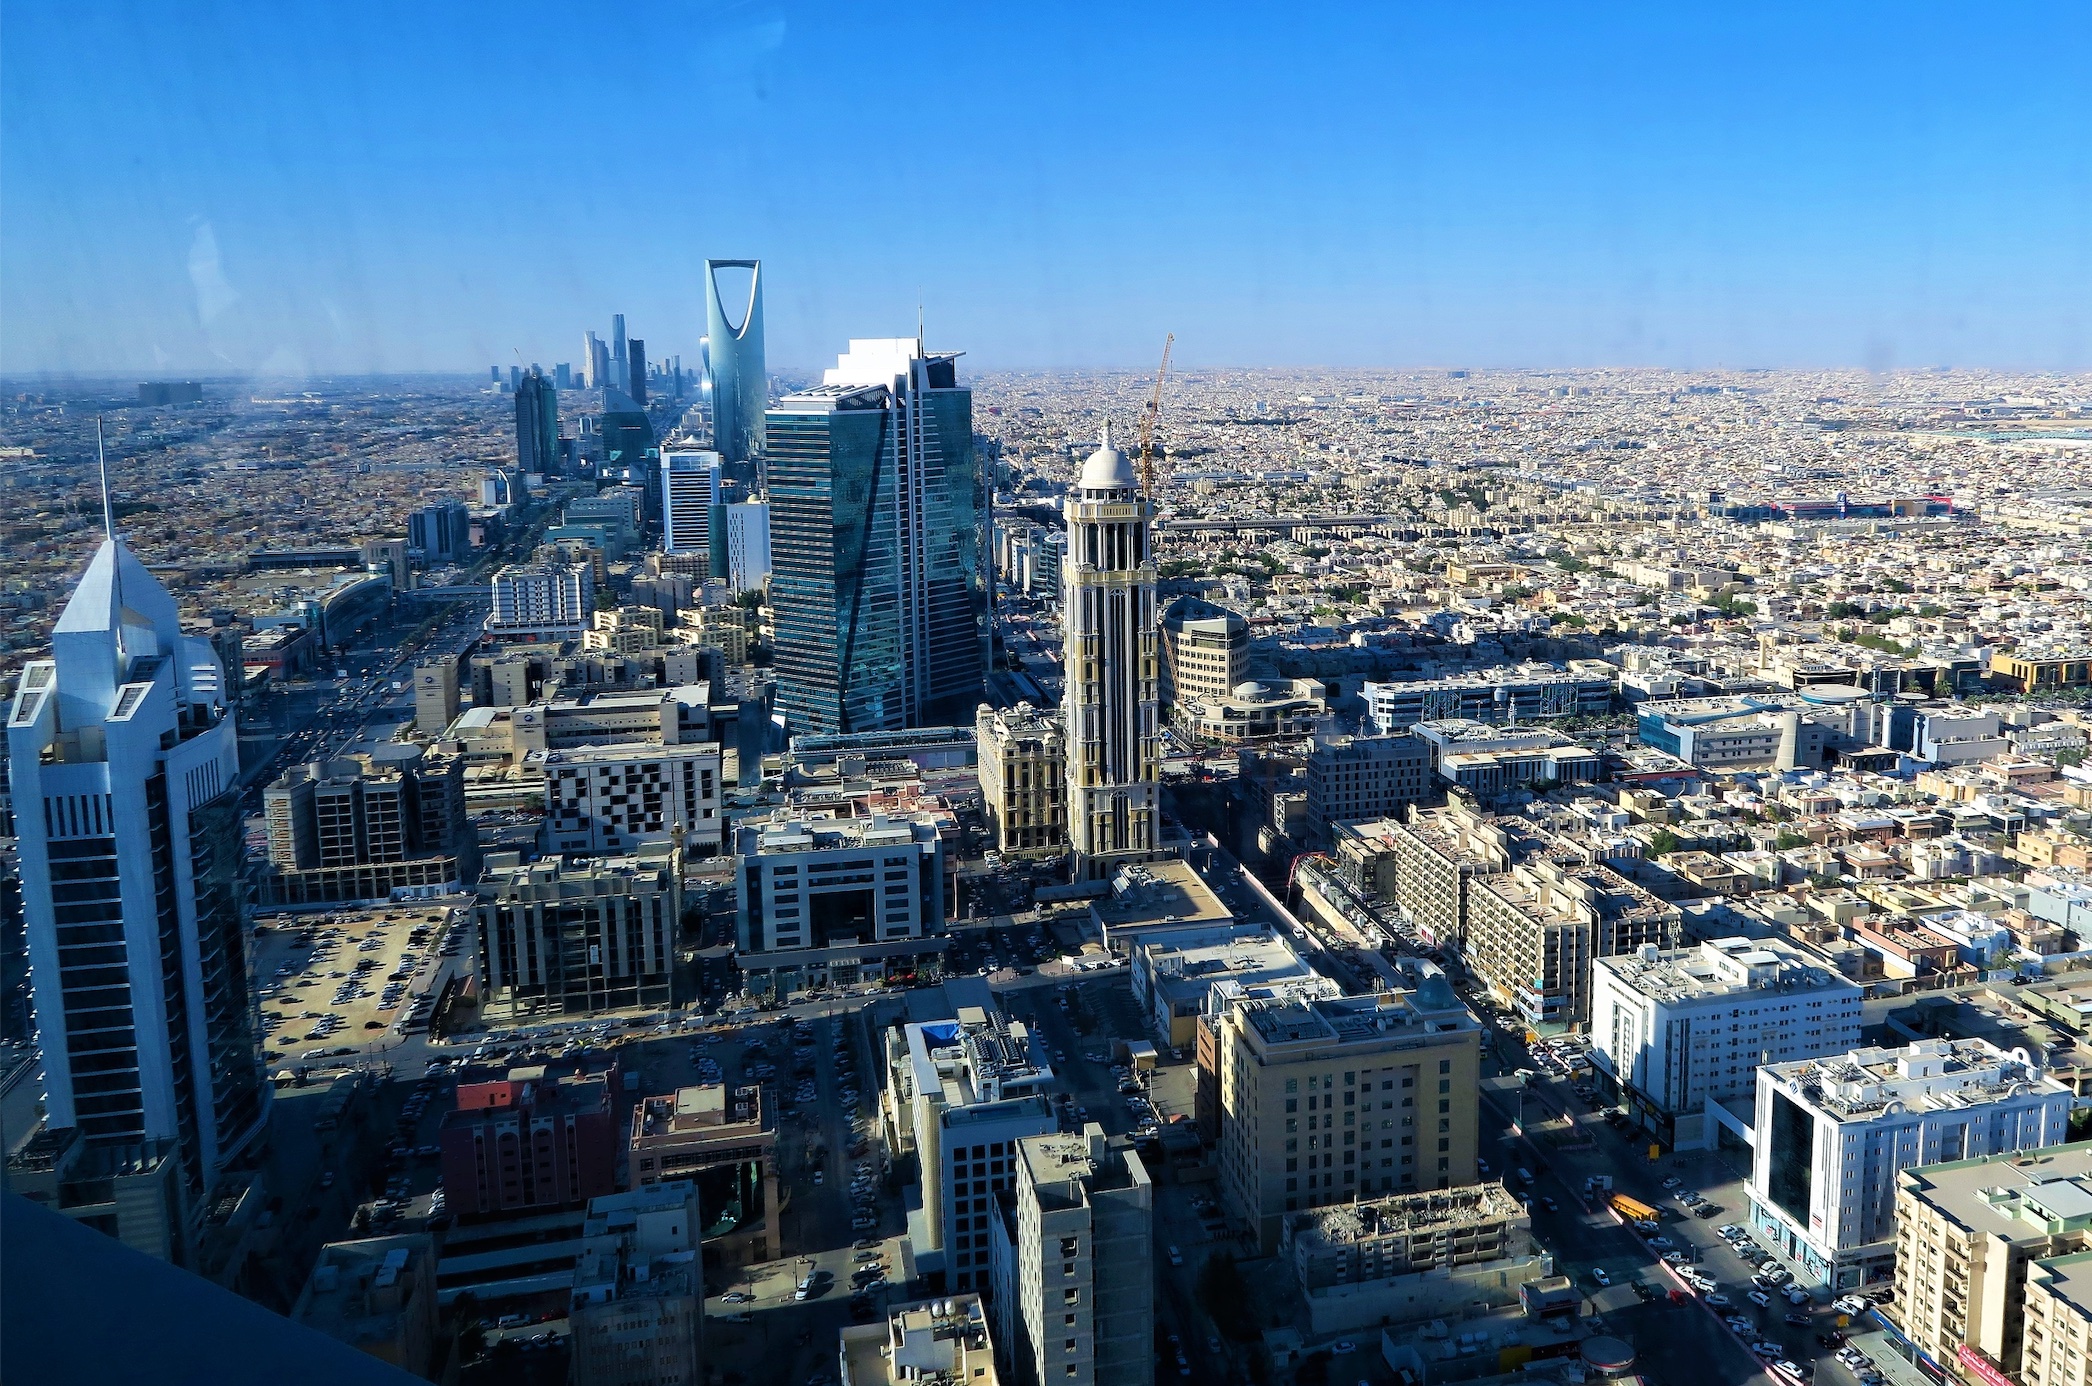 Riyadh, Saudi Arabia; image by ekrem osmanoglu, via Unsplash.com.